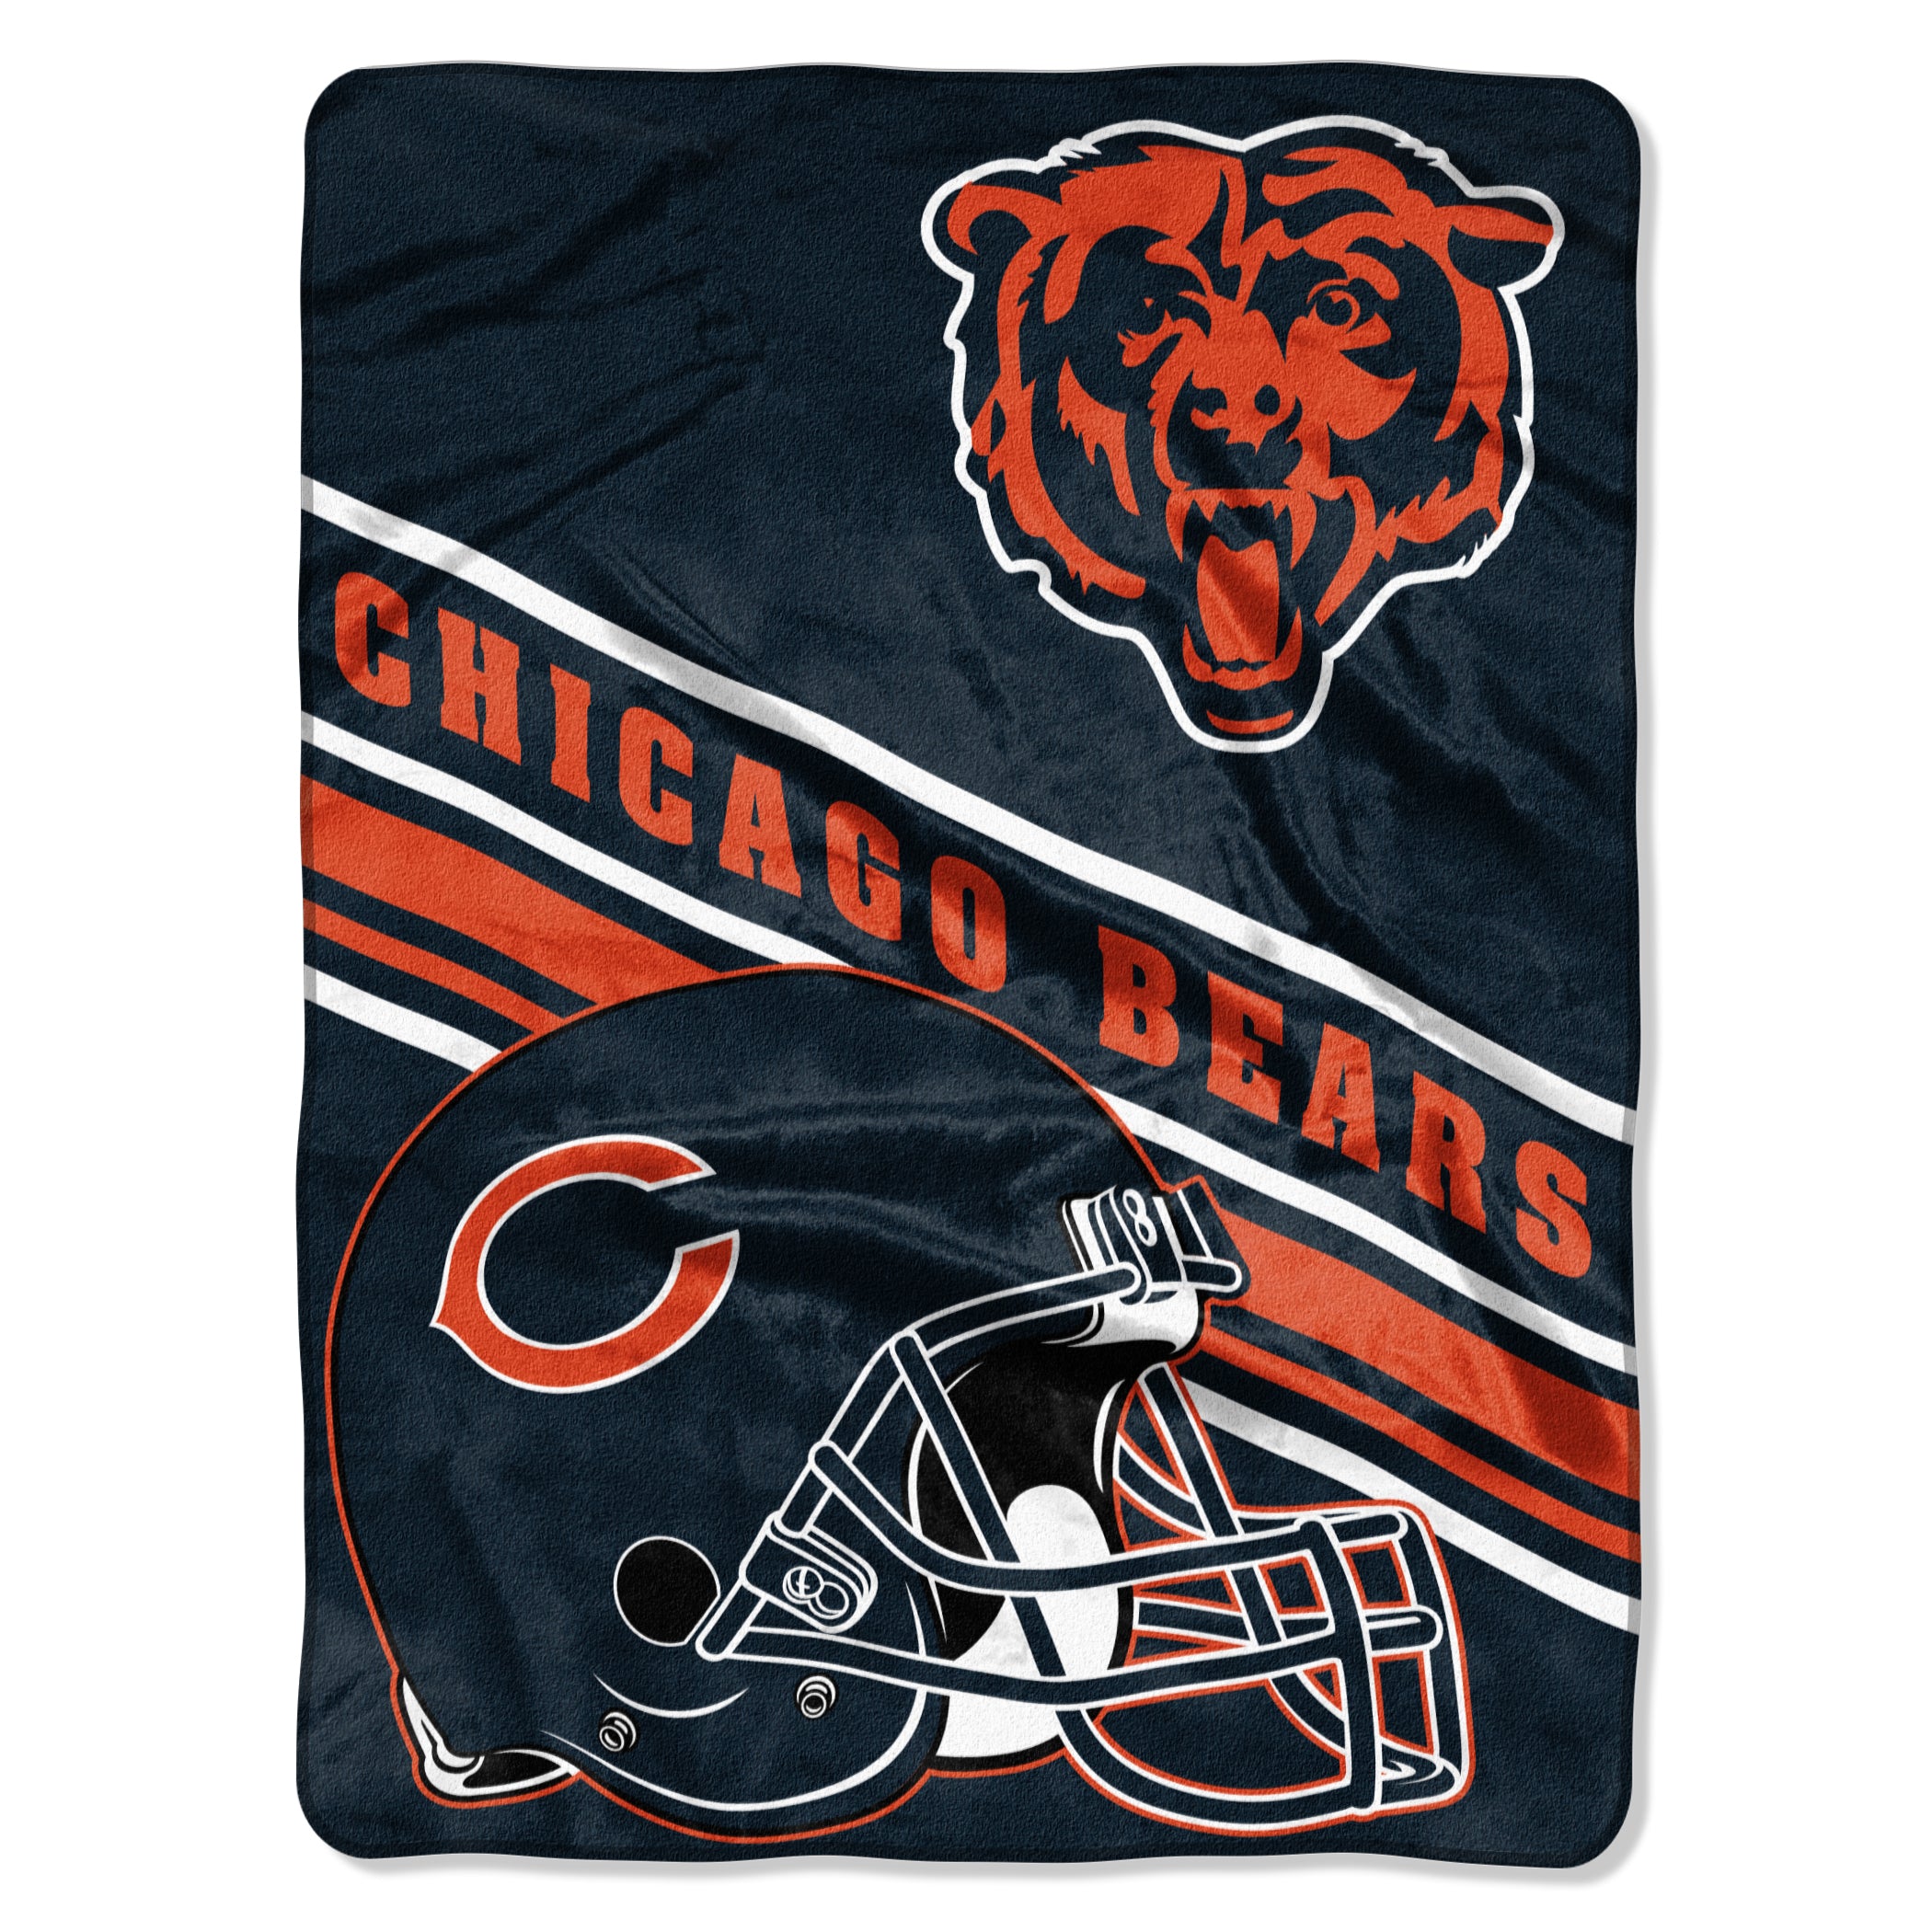 Chicago Bears Blanket 60x80 Raschel Slant Design